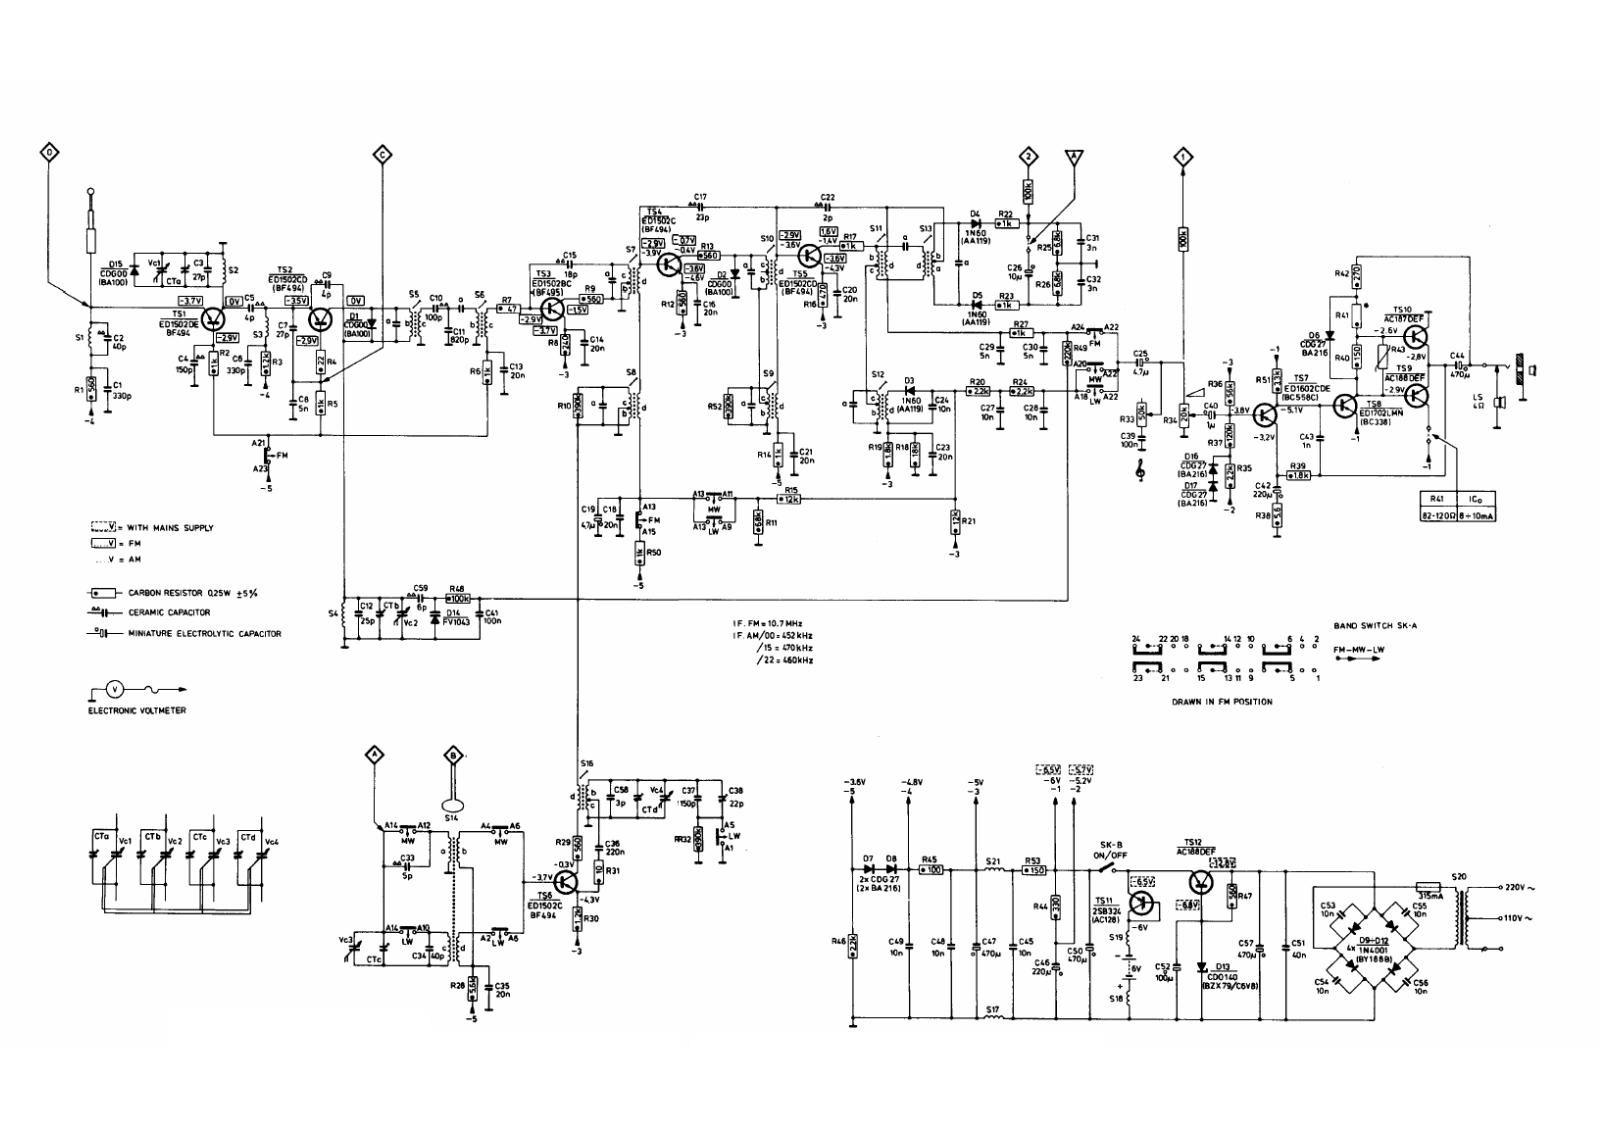 Philips 90rl450 schematic